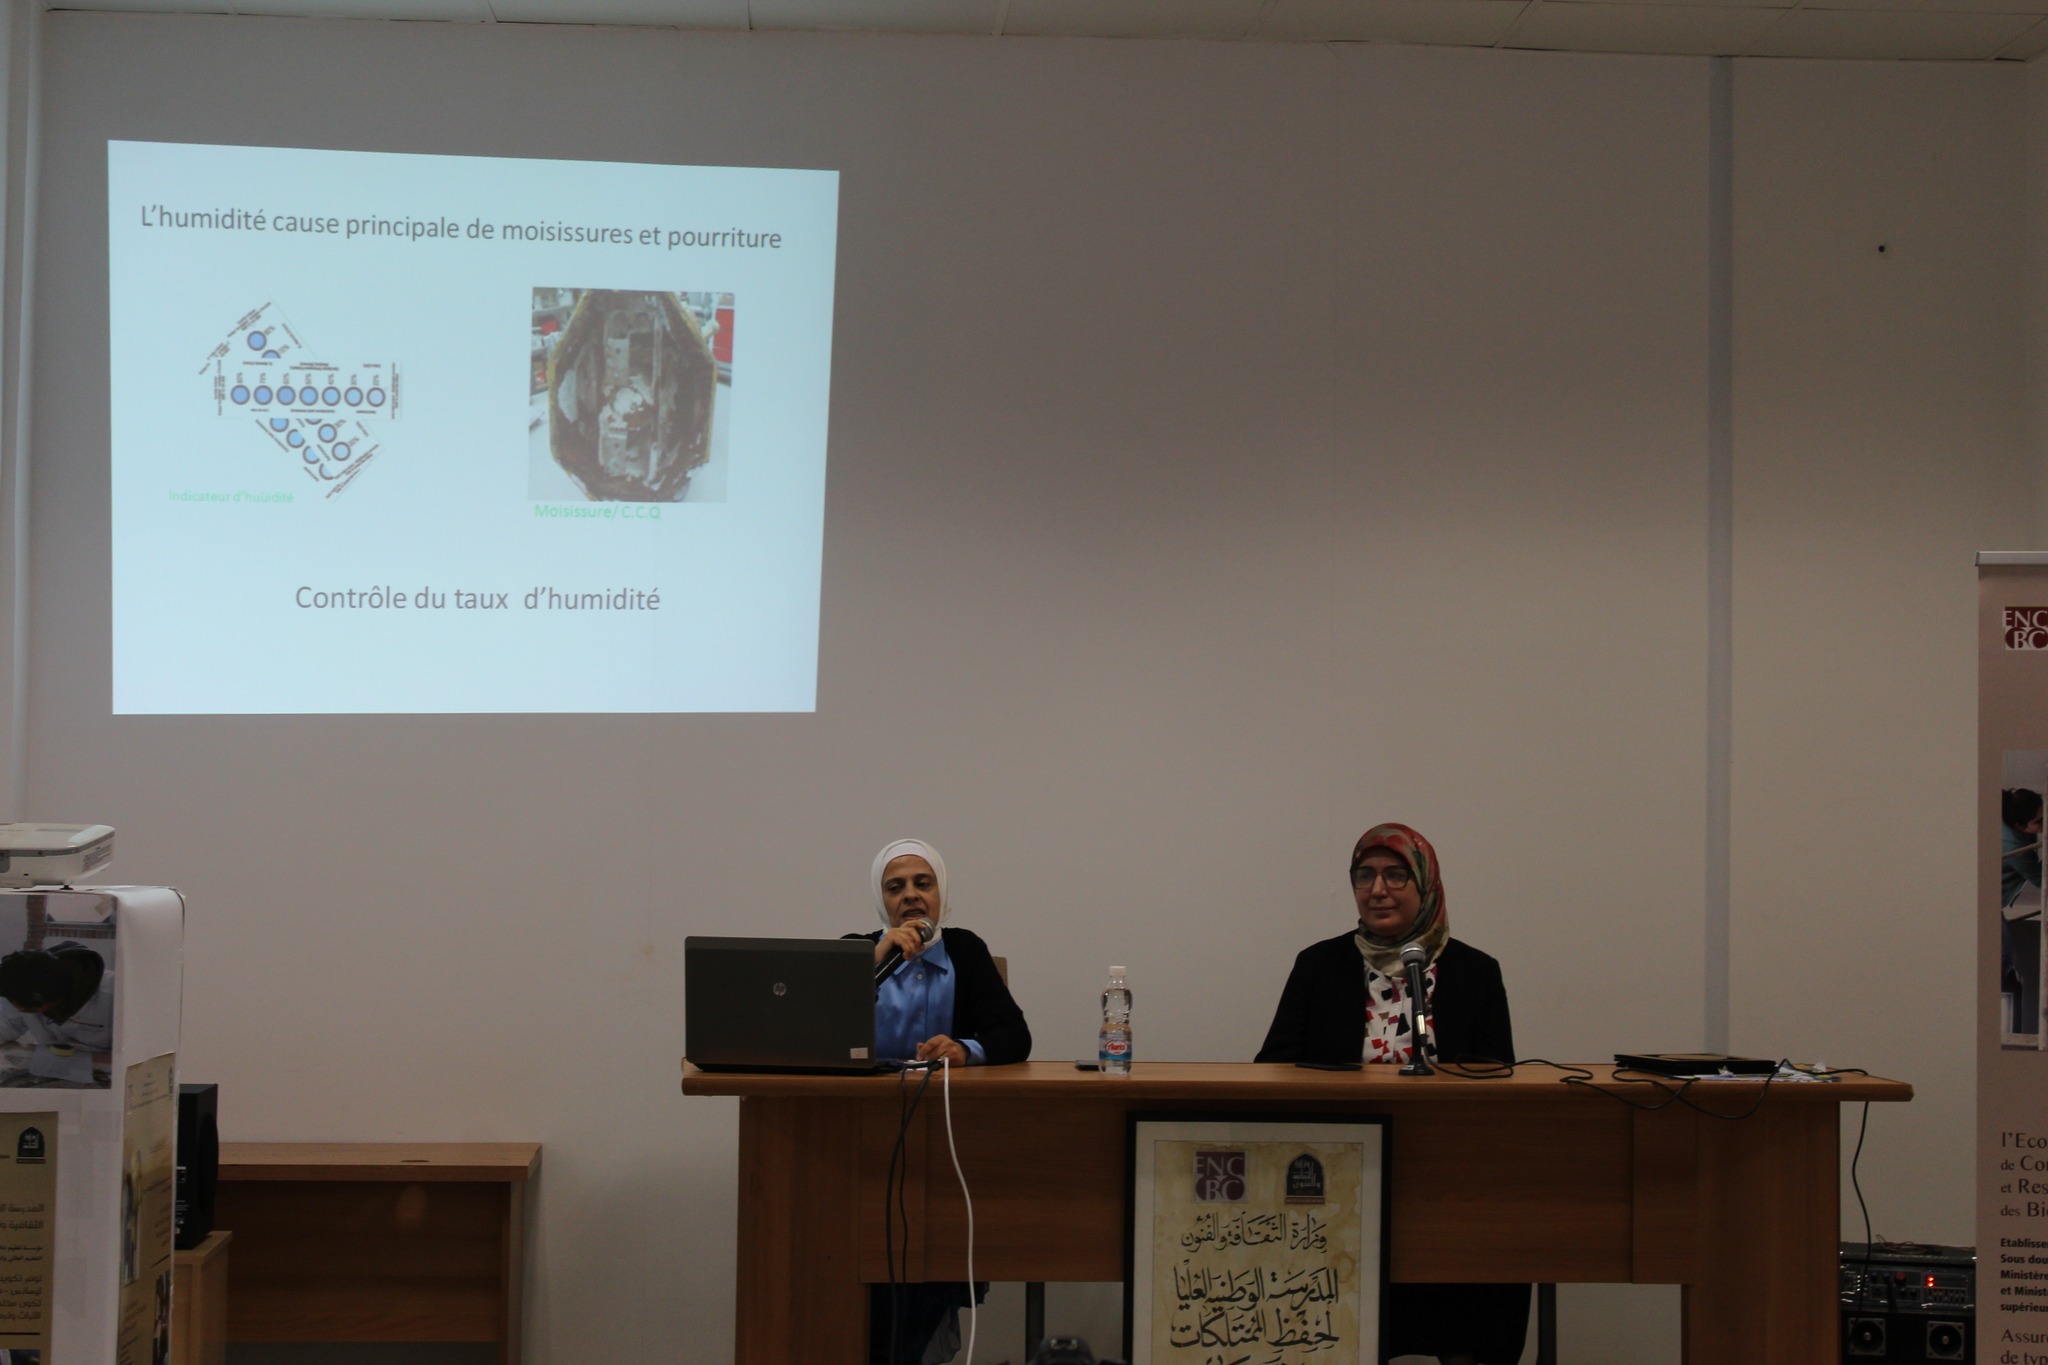 les participantes aux conférences  Dr.Ait said Nabila et Dr.Atif Nadjoua